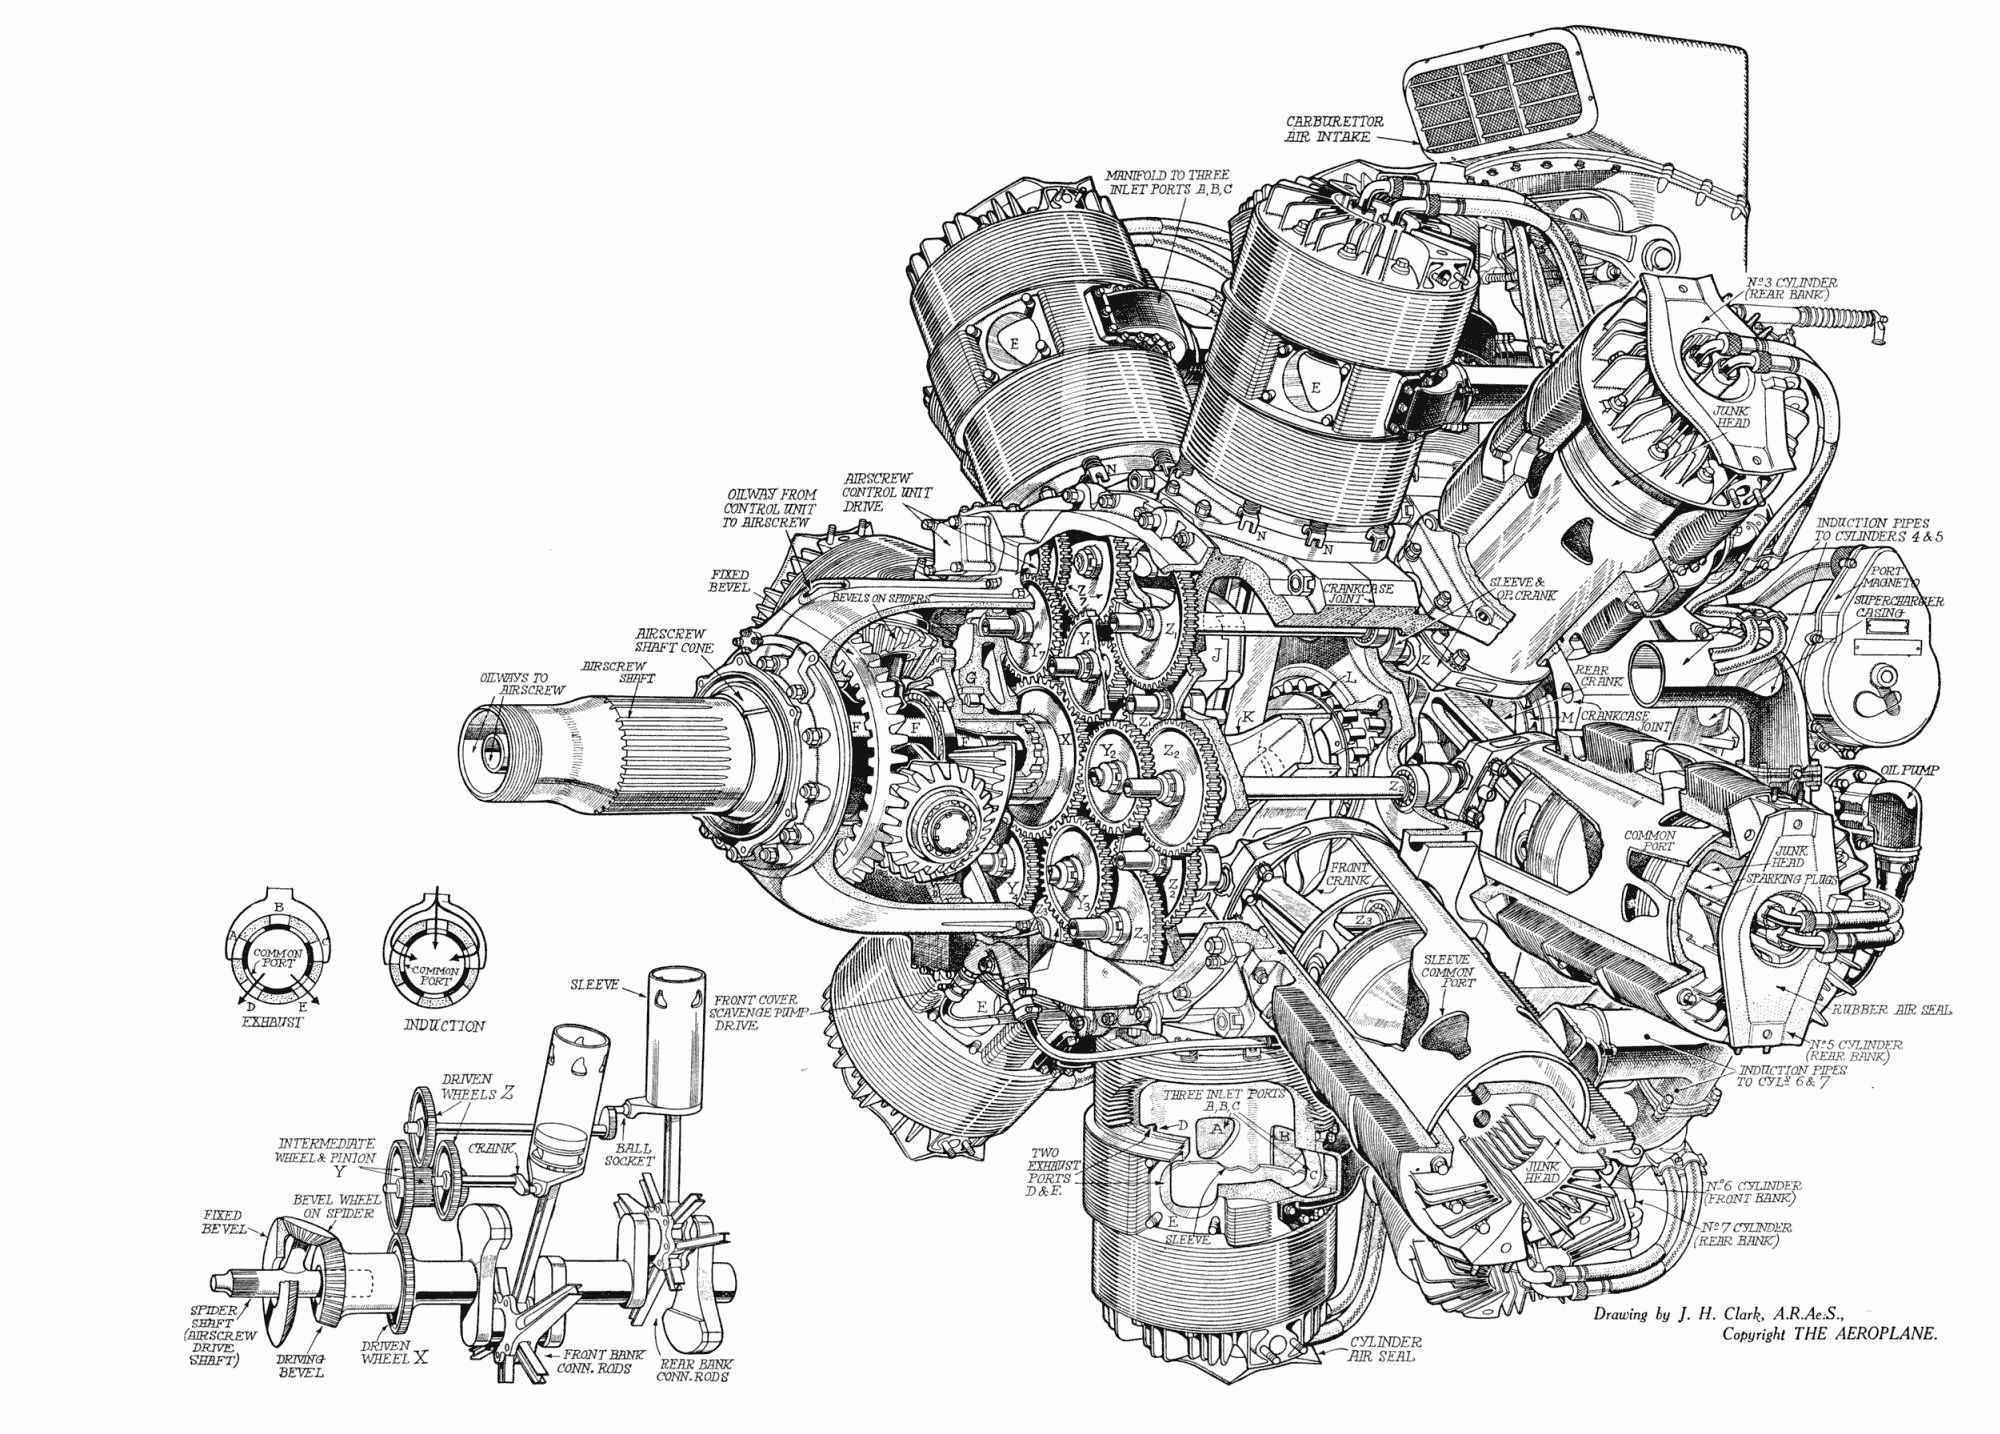 Hercules XVI Rotary Engine cutaway drawing